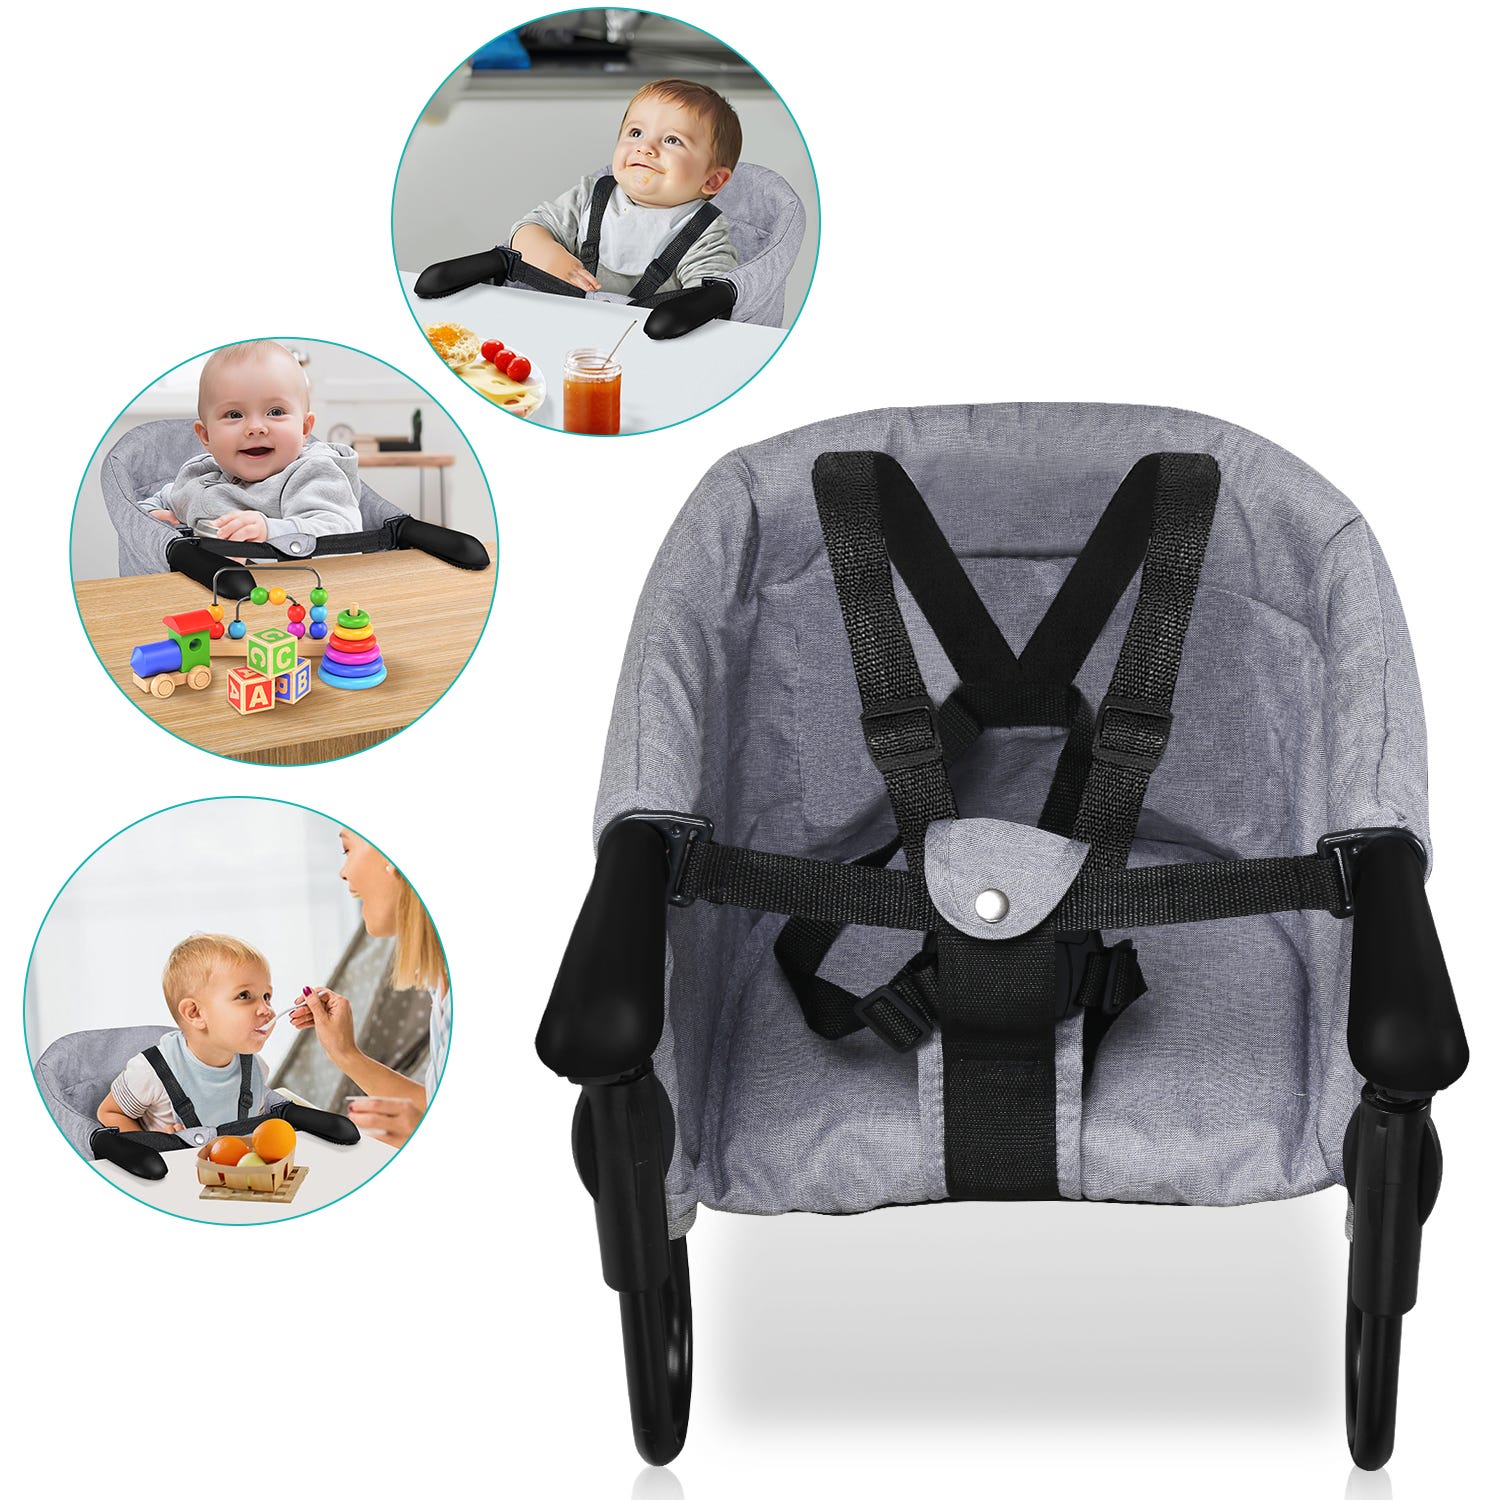 Siège de table bébé 6-36 mois Rehausseur de siège Chaise bébé